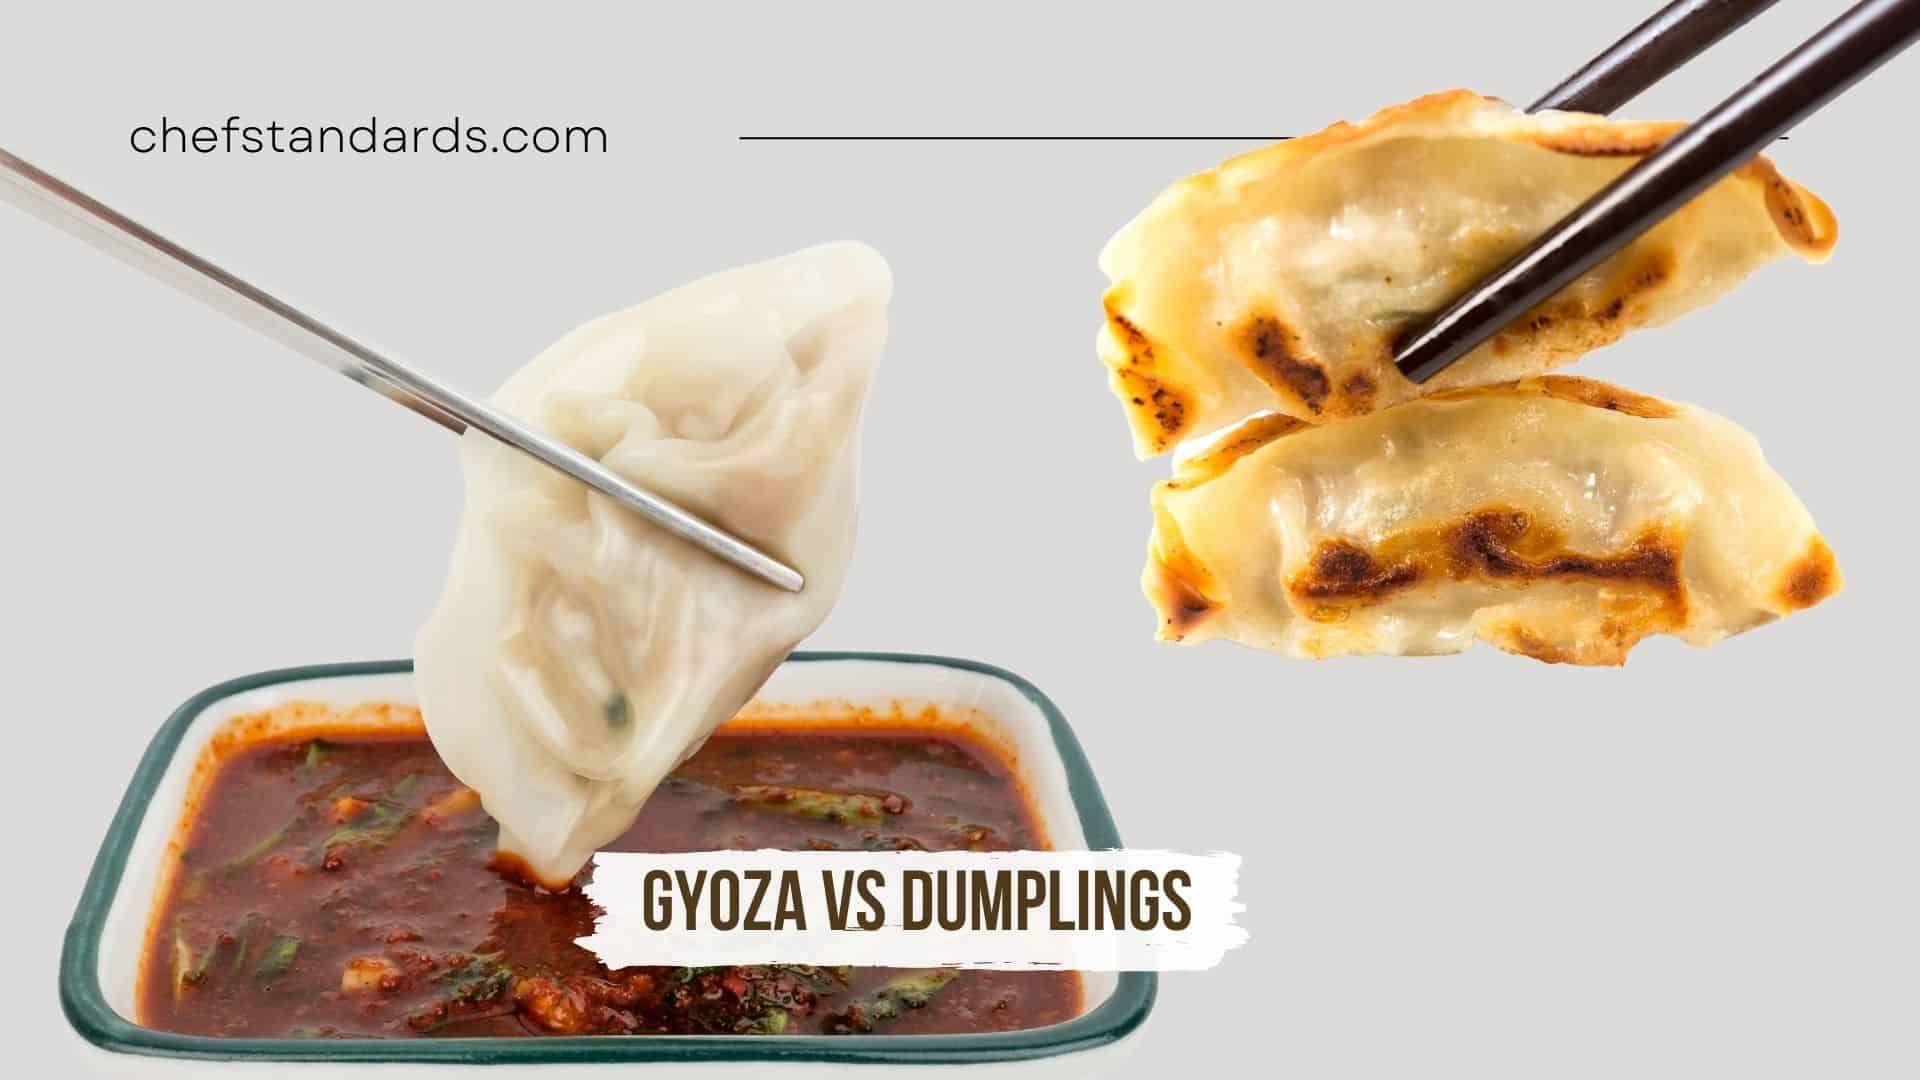 Gyoza vs Dumplings: A Battle of Asian Dumpling Delights